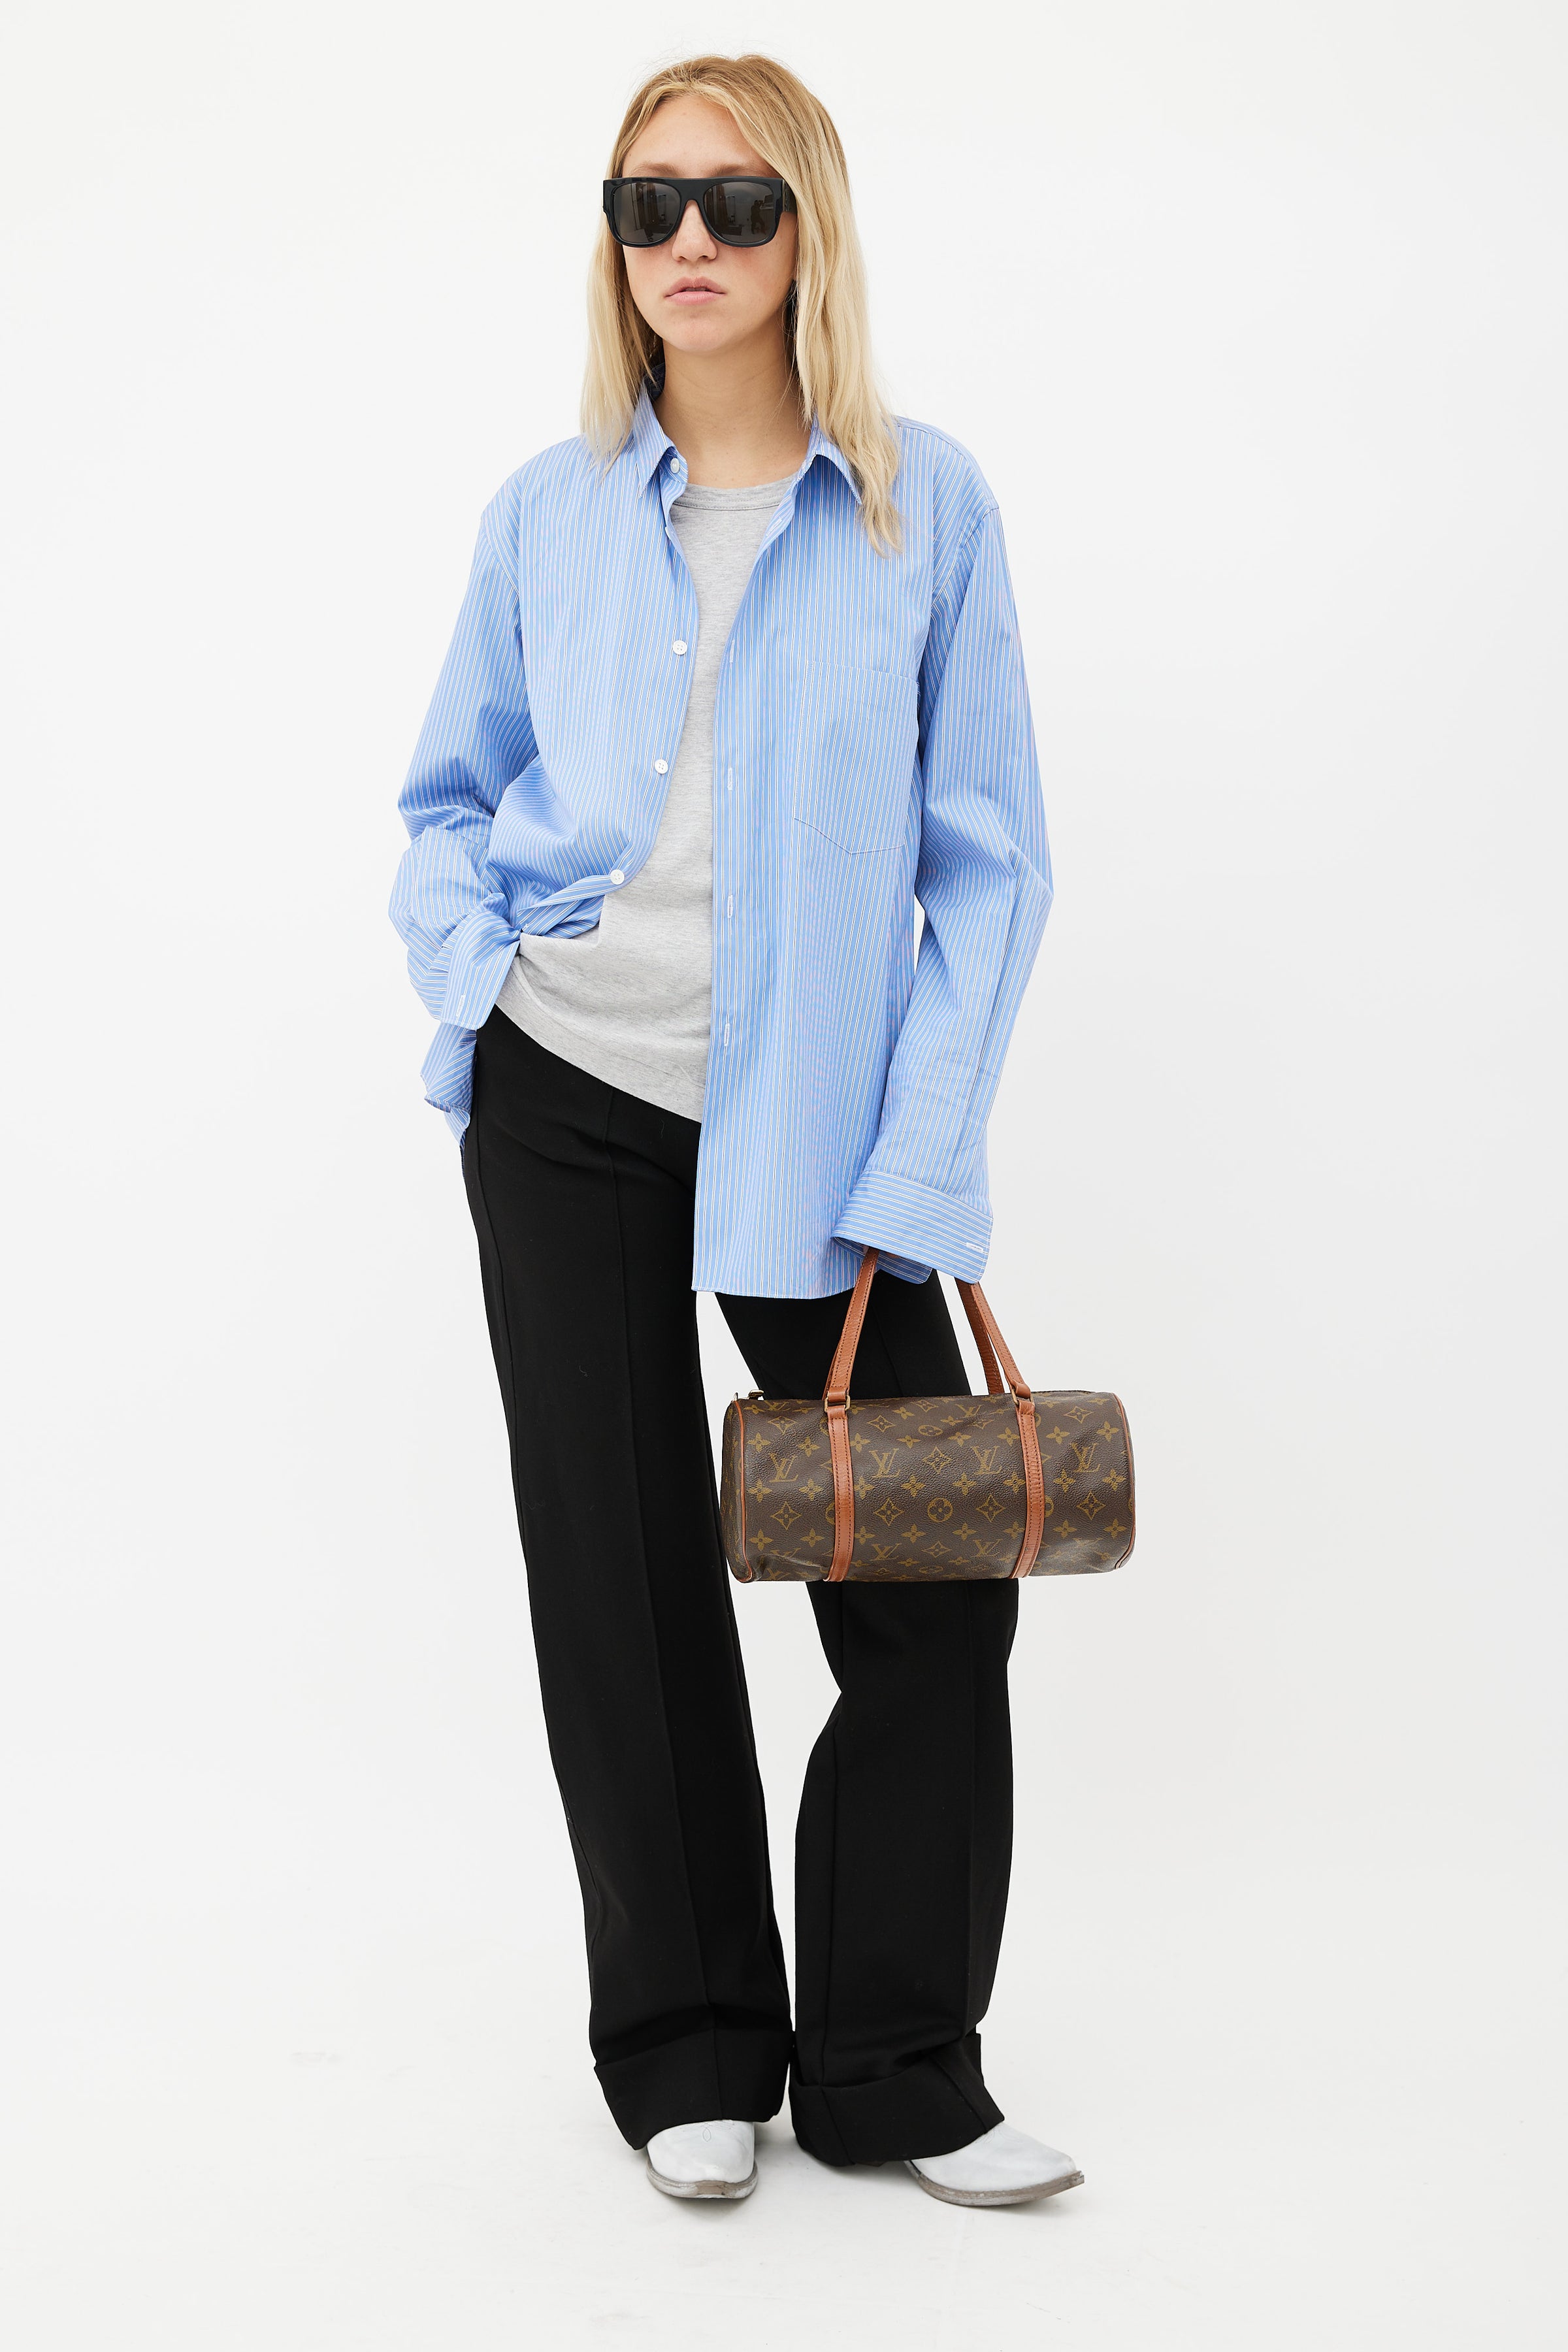 Papillon cloth handbag Louis Vuitton Brown in Cloth - 32383217